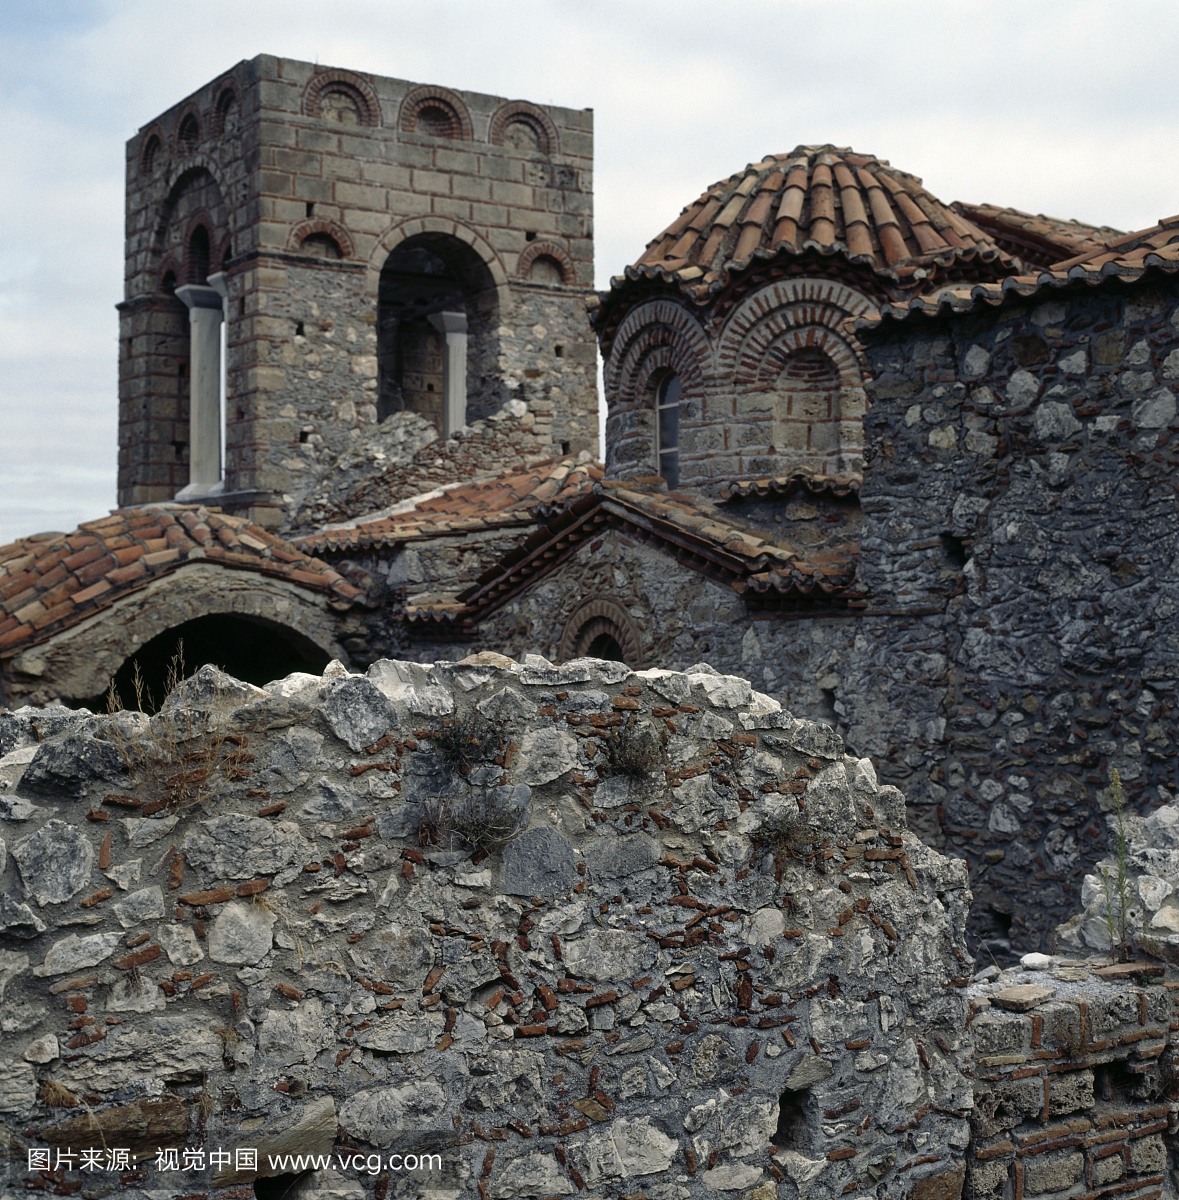 斯塔教堂和圆顶教堂的索菲娅索菲亚,1350年,拜